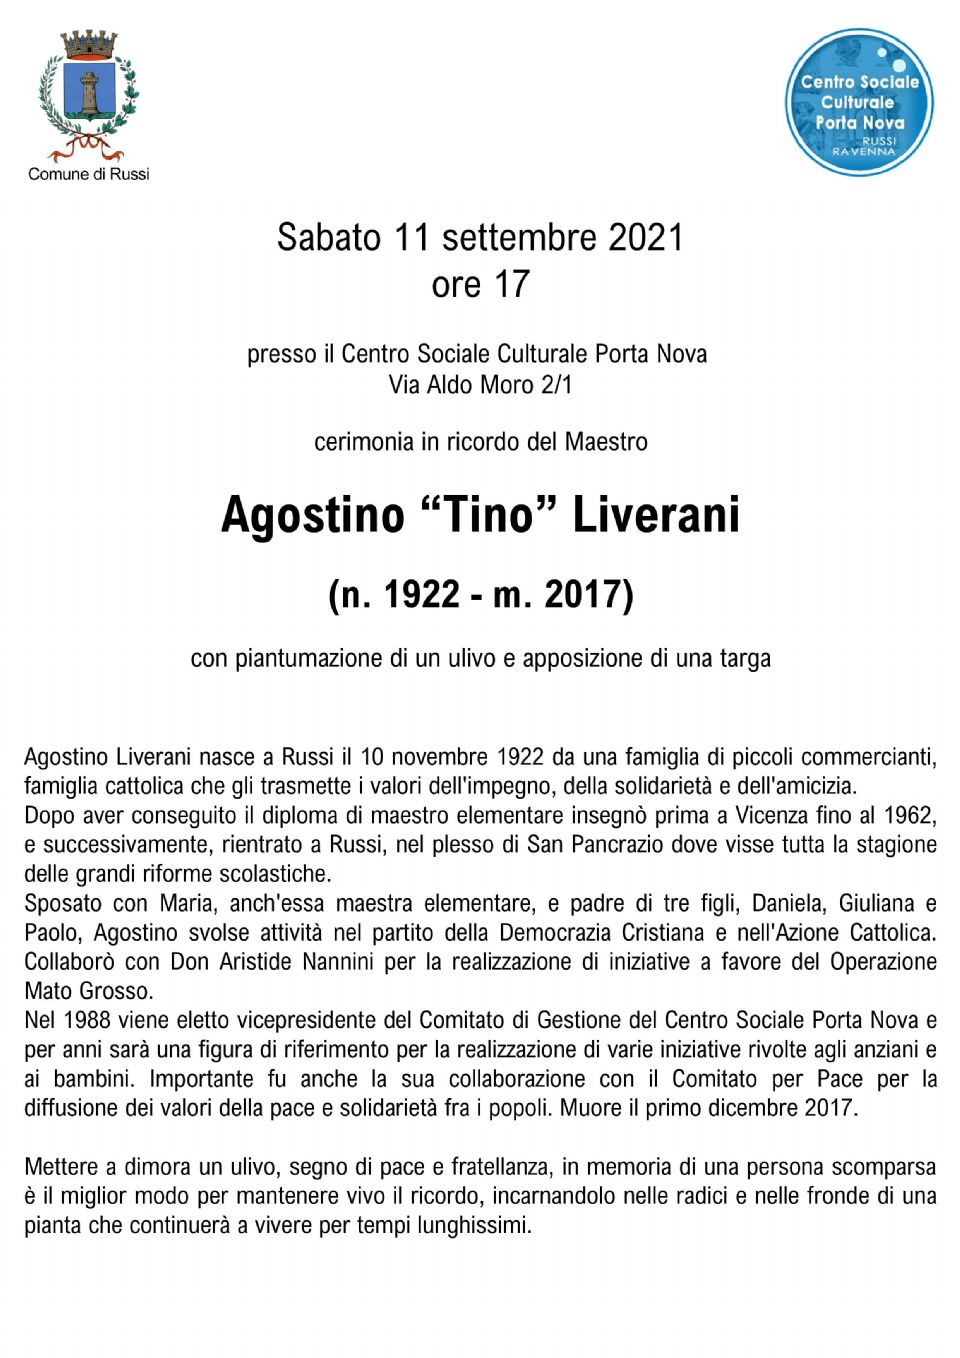 Cerimonia in ricordo del Maestro Agostino  Tino Liverani ( 1922-2017 )